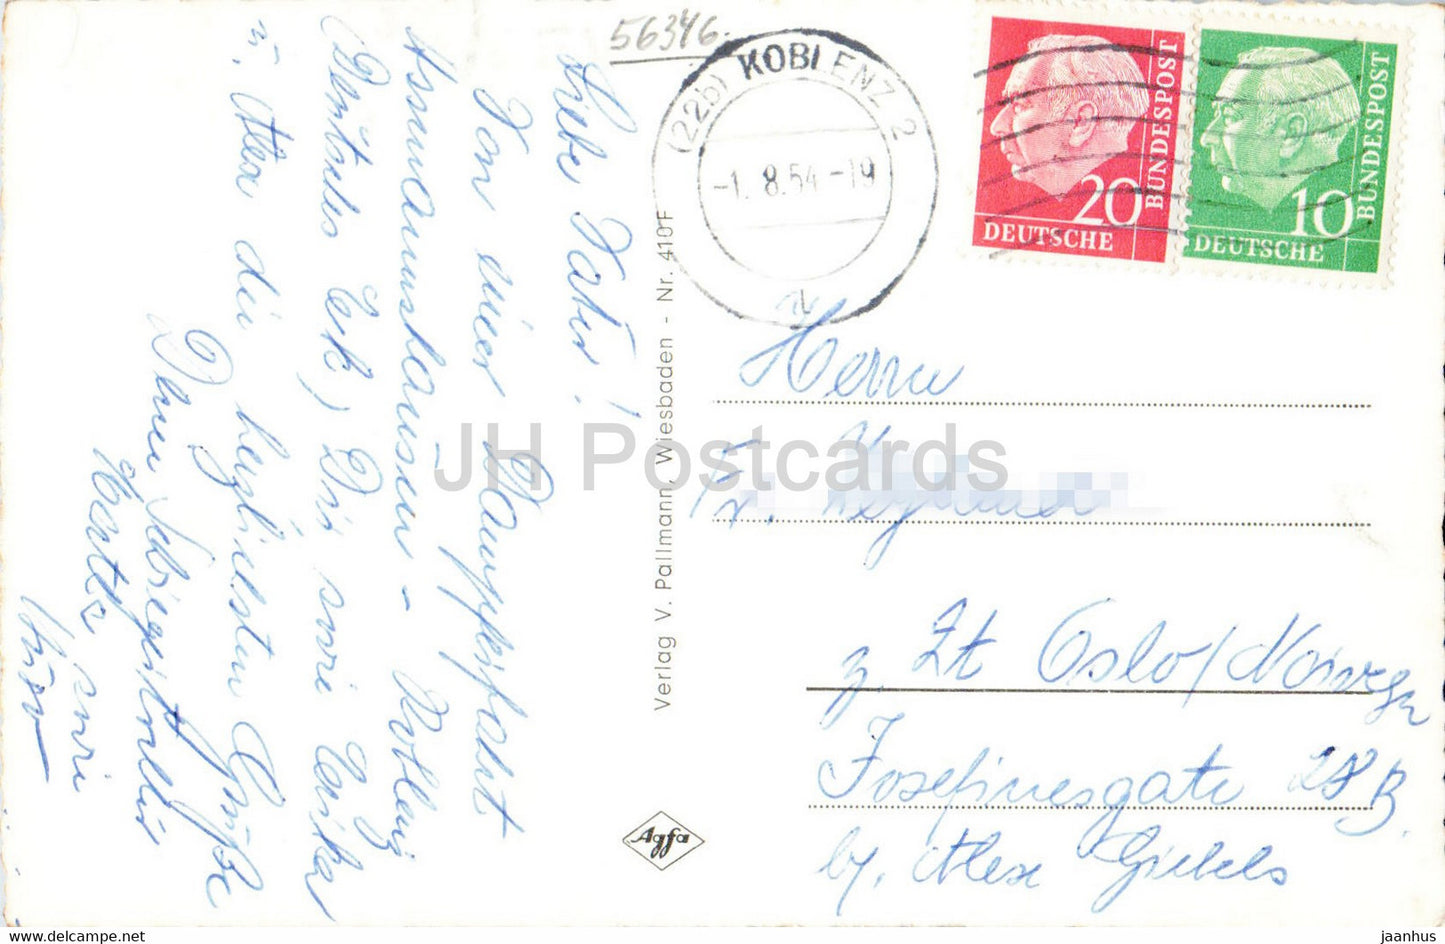 St. Goarshausen - Loreley - Schiff - alte Postkarte - 1954 - Deutschland - gebraucht